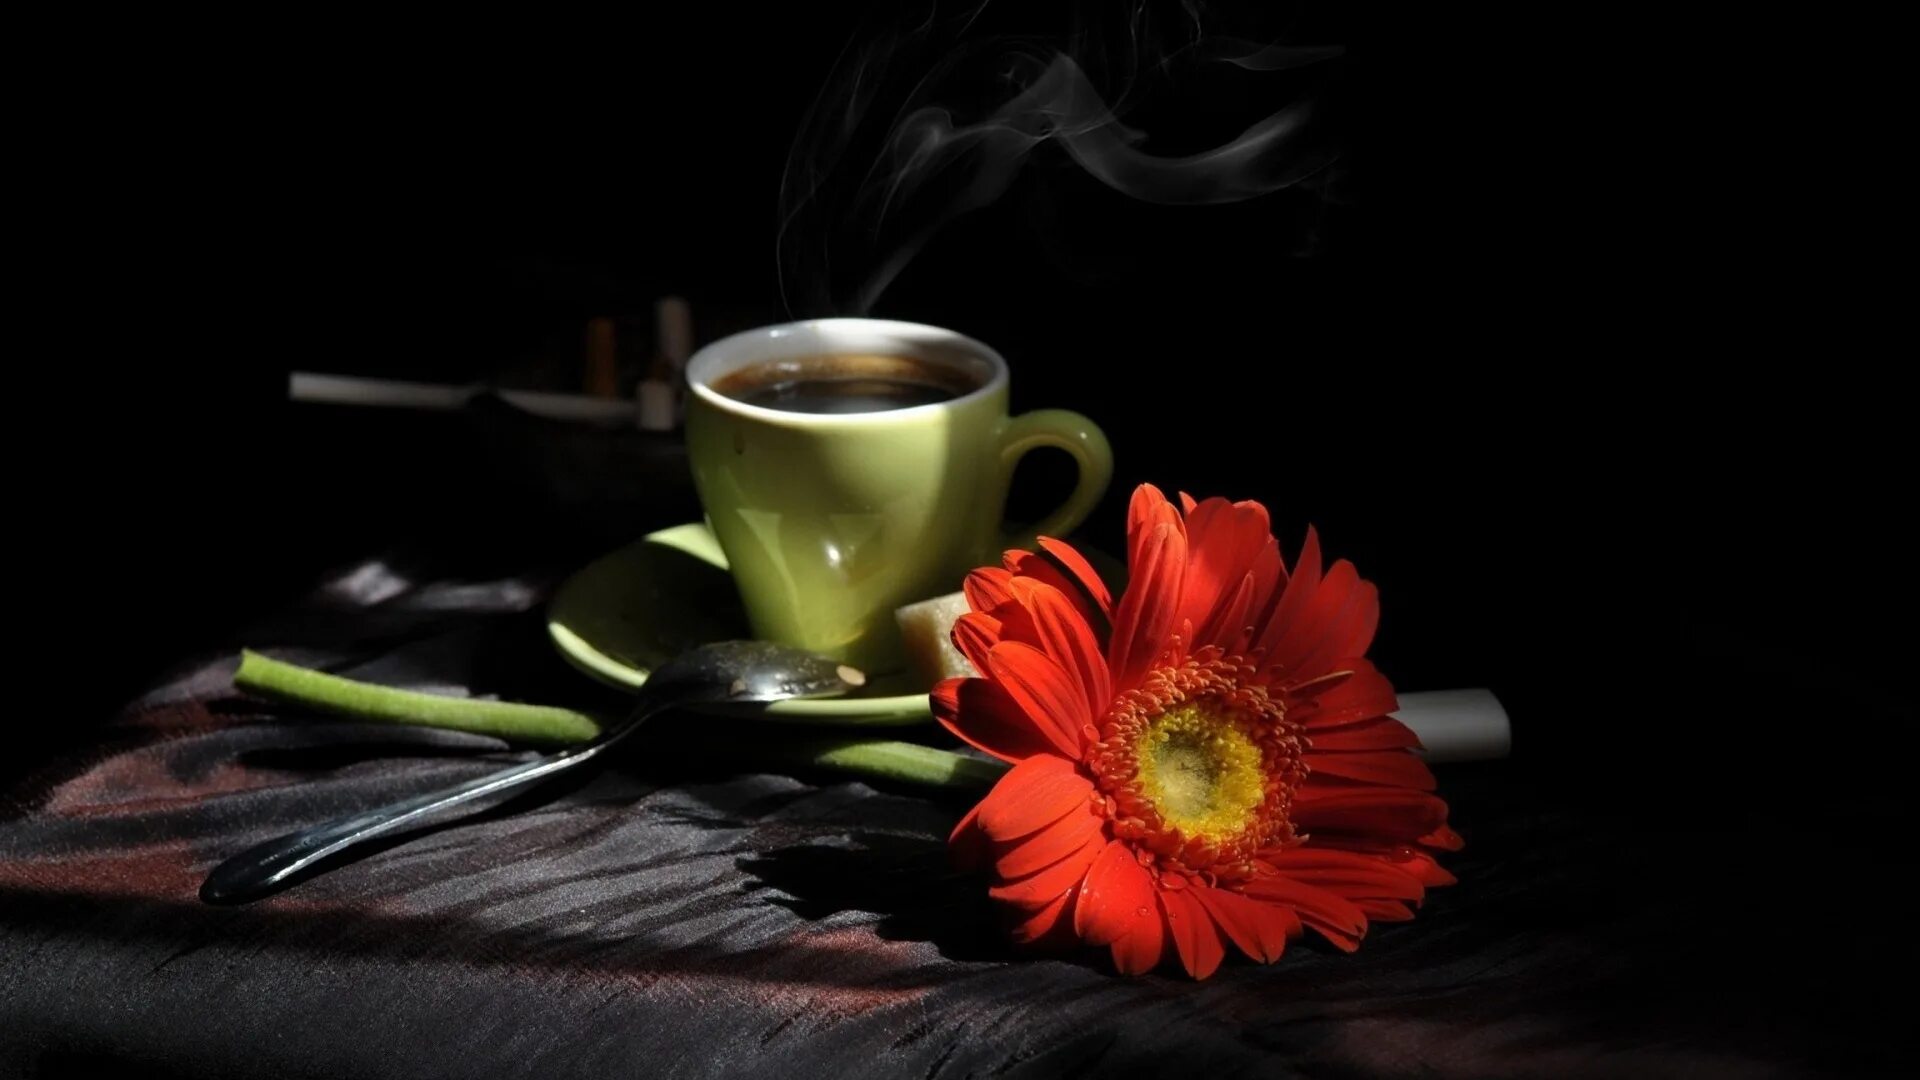 Песня я хочу пожелать. Желаю вам маленьких радостей чашку ароматного кофе. Я хочу пожелать вам радости. Пожелания приятных мелочей. Желаю чашечку ароматного кофе.